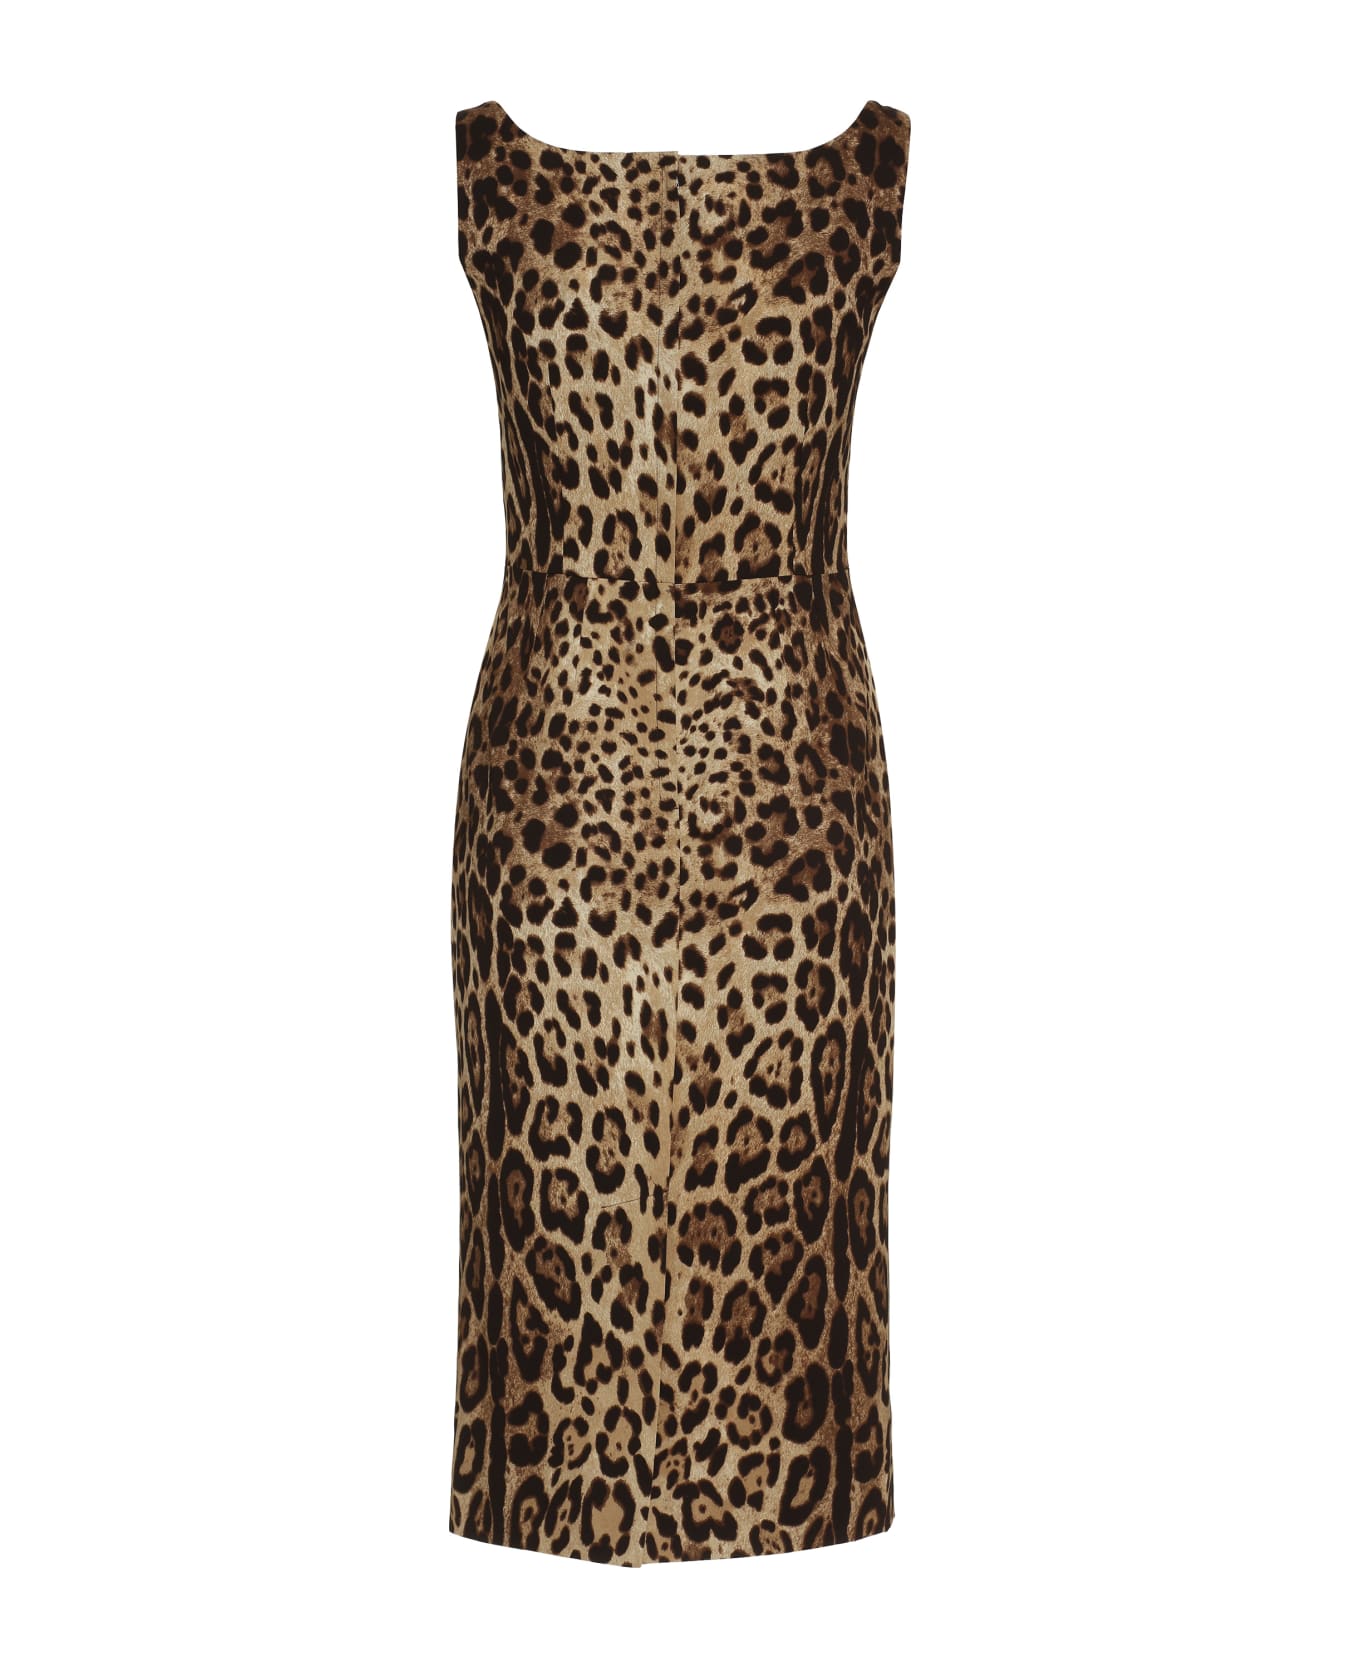 Dolce & Gabbana Printed Silk Dress - Animalier